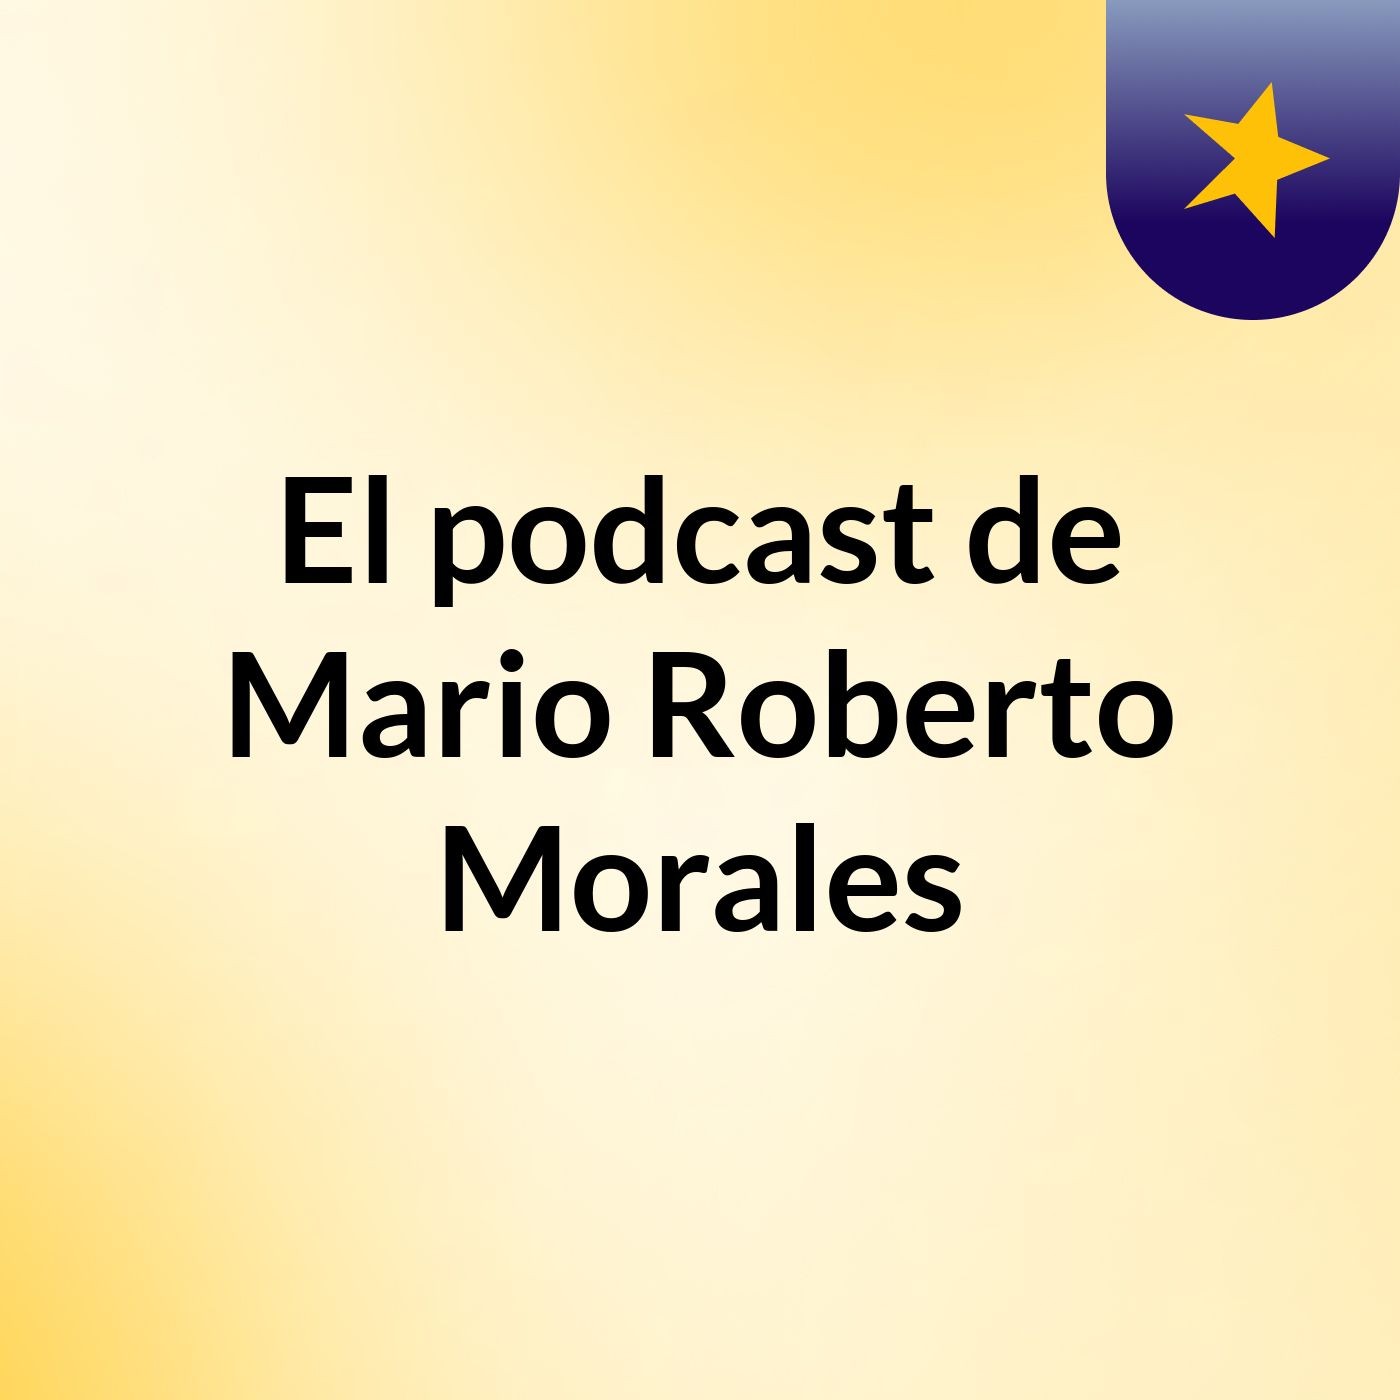 Episodio 2 - El podcast de Mario Roberto Morales